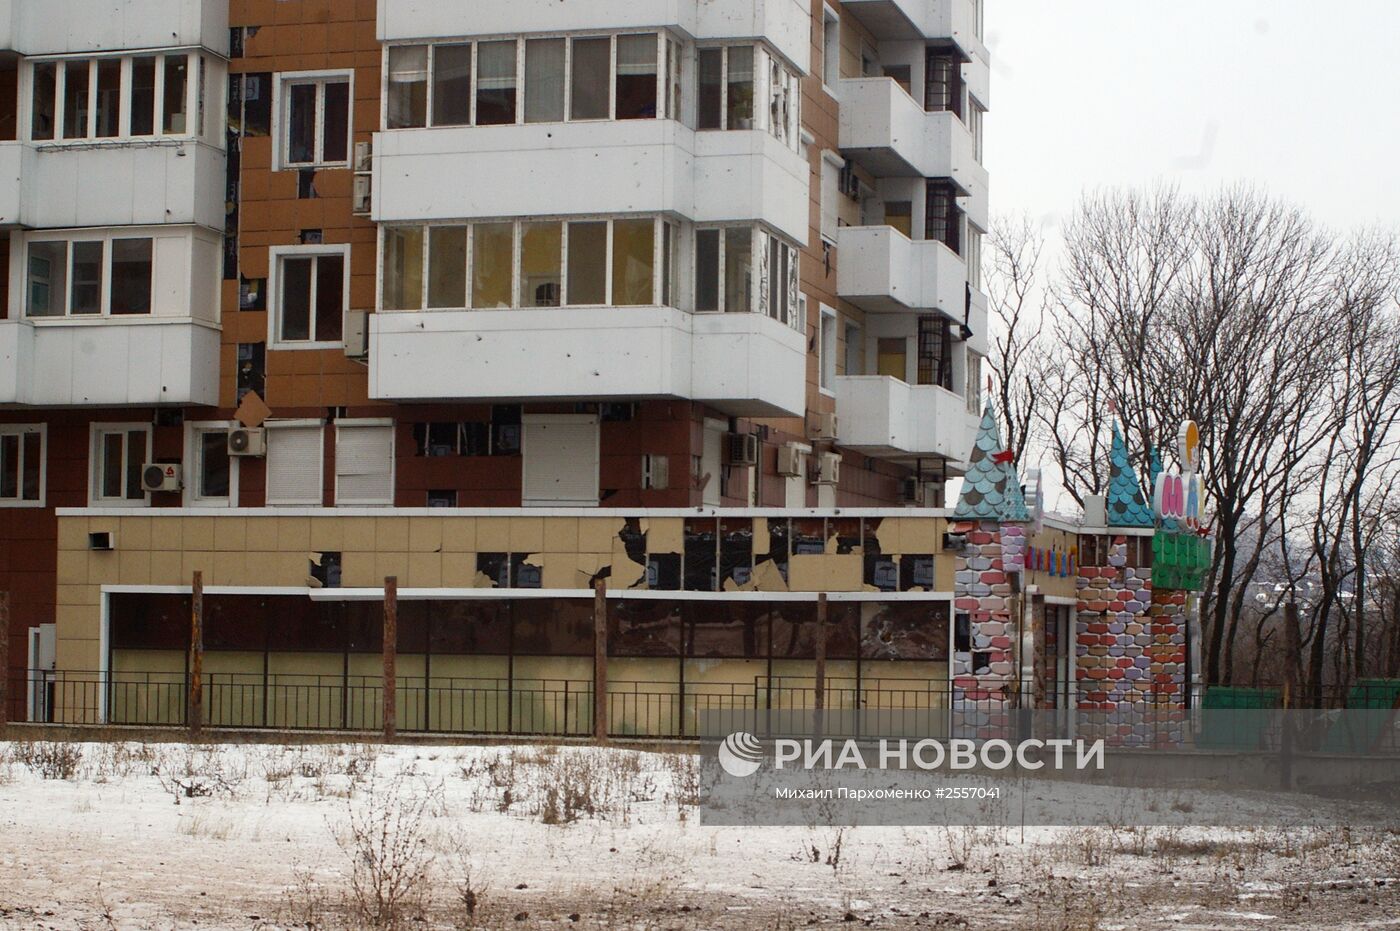 Последствия обстрелов Донецка
украинскими силовиками